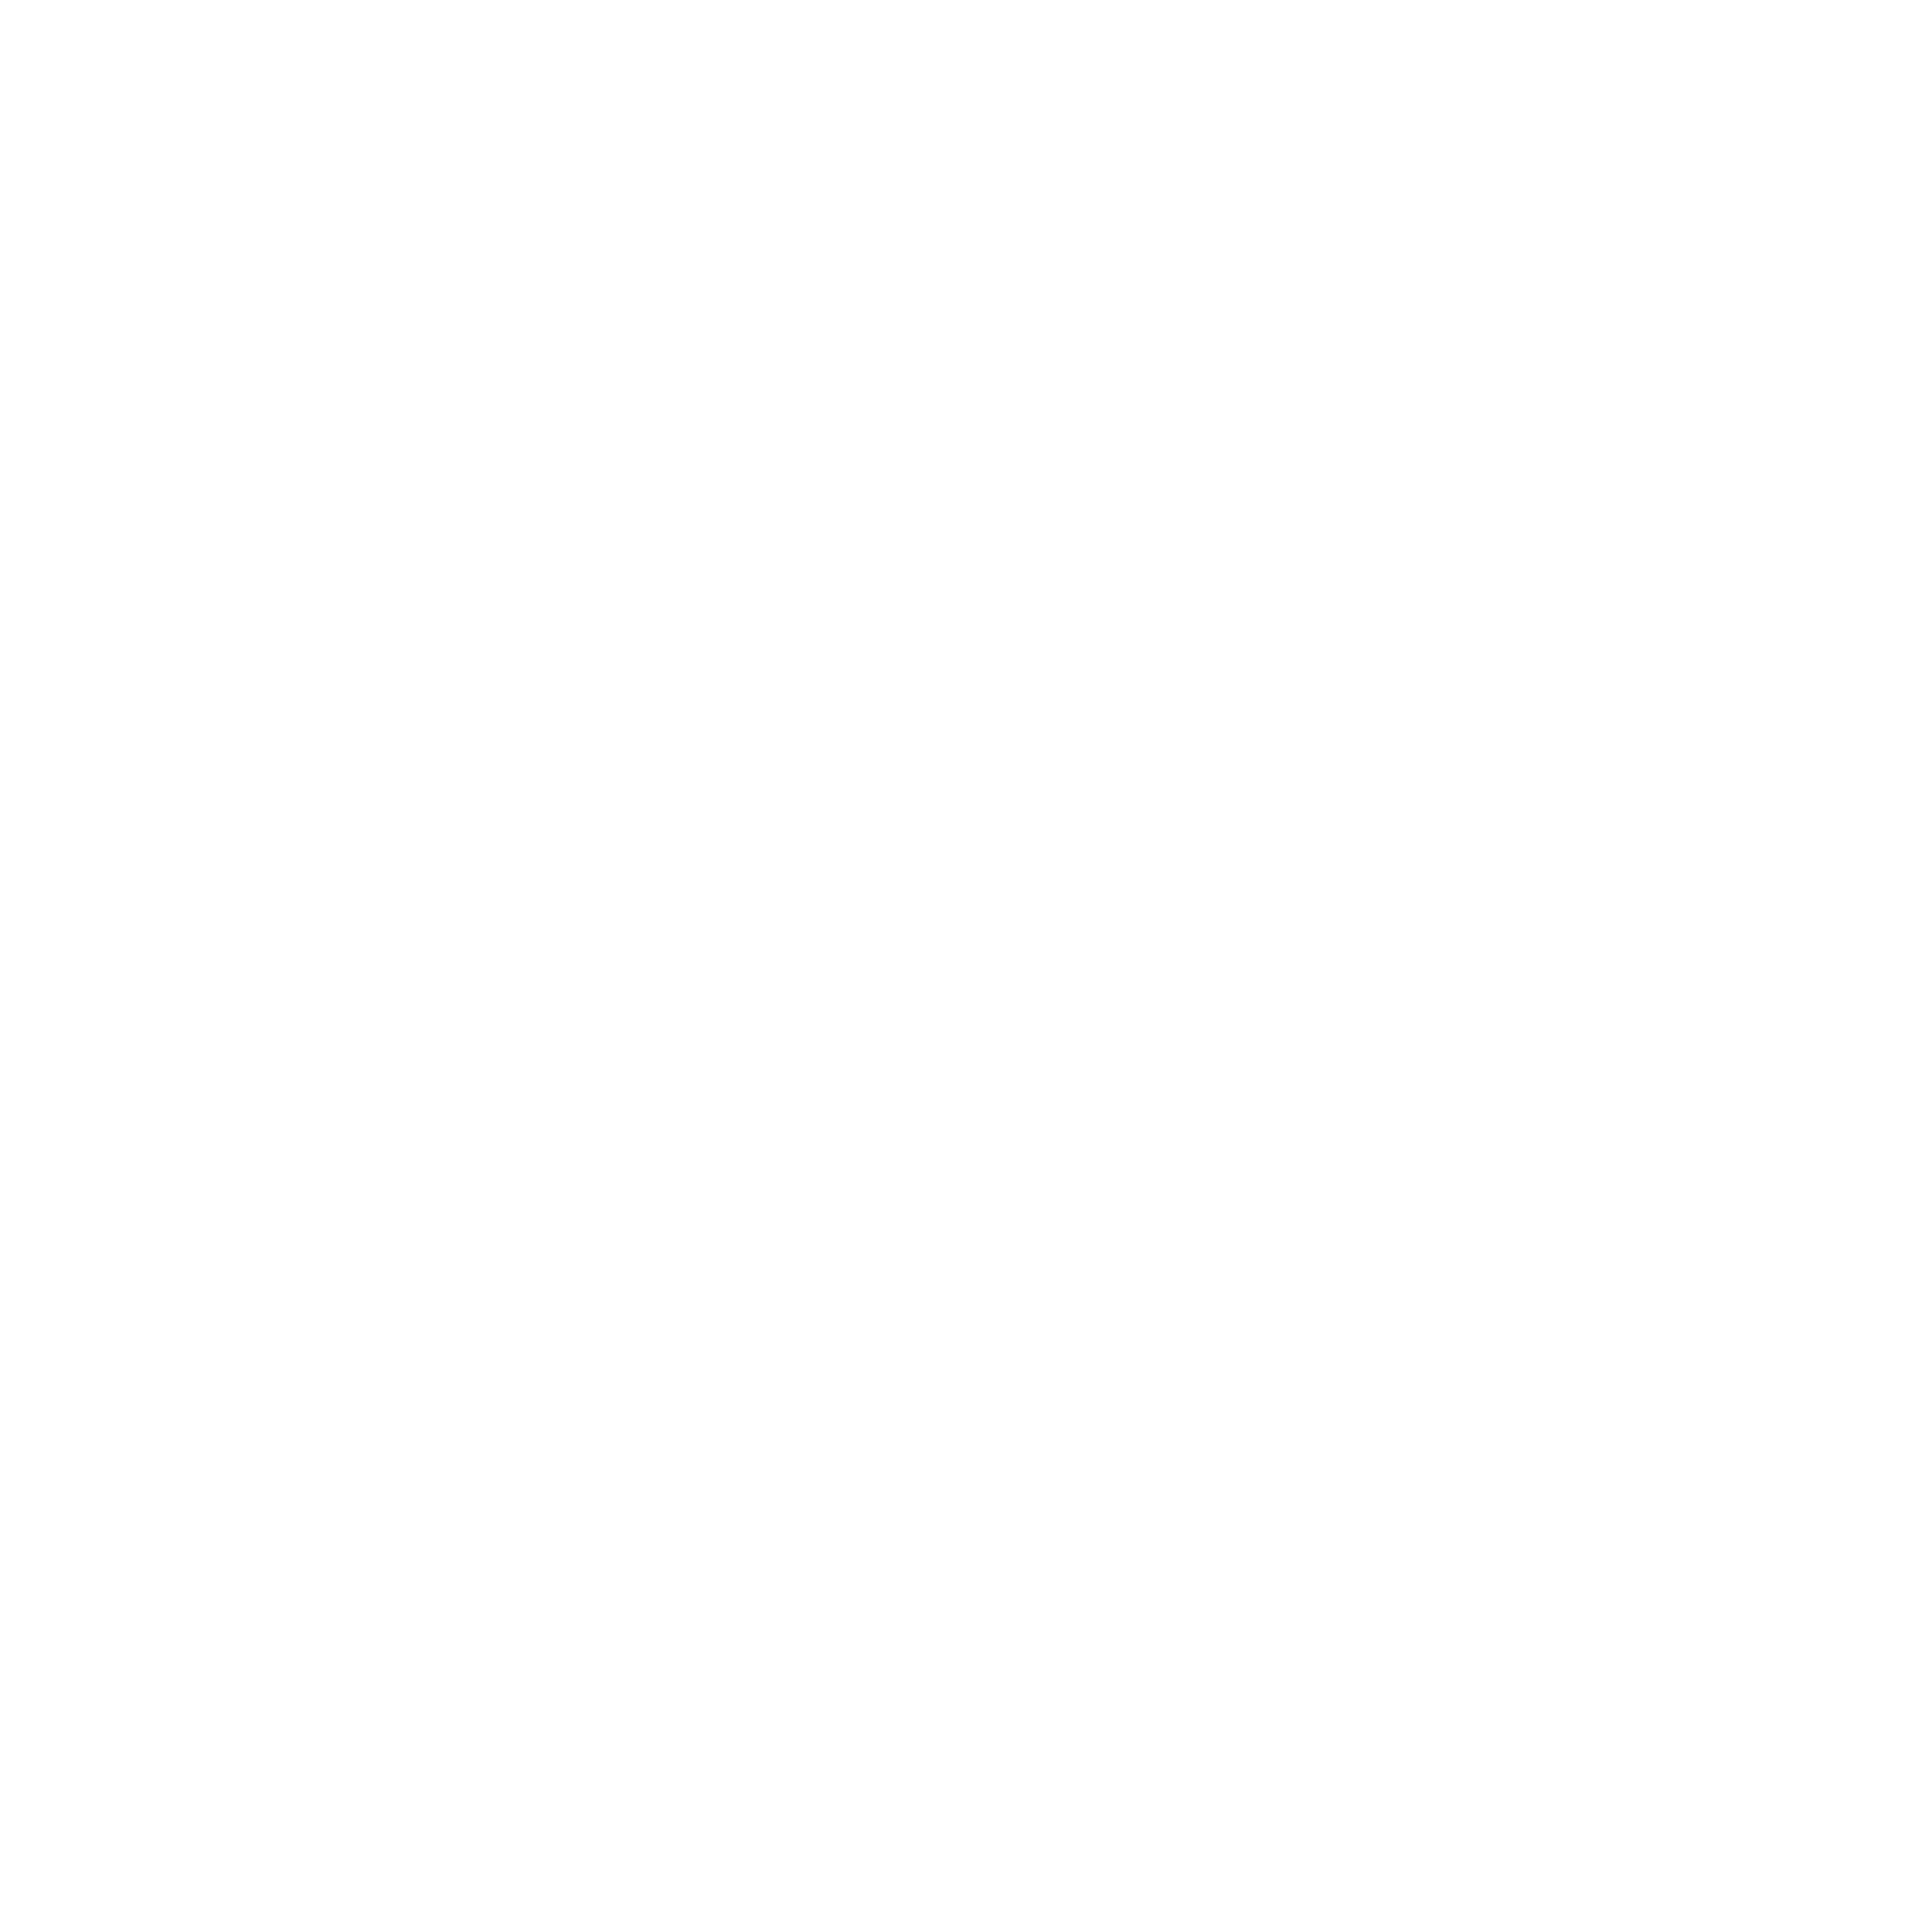 Team Spirit Whisky logo